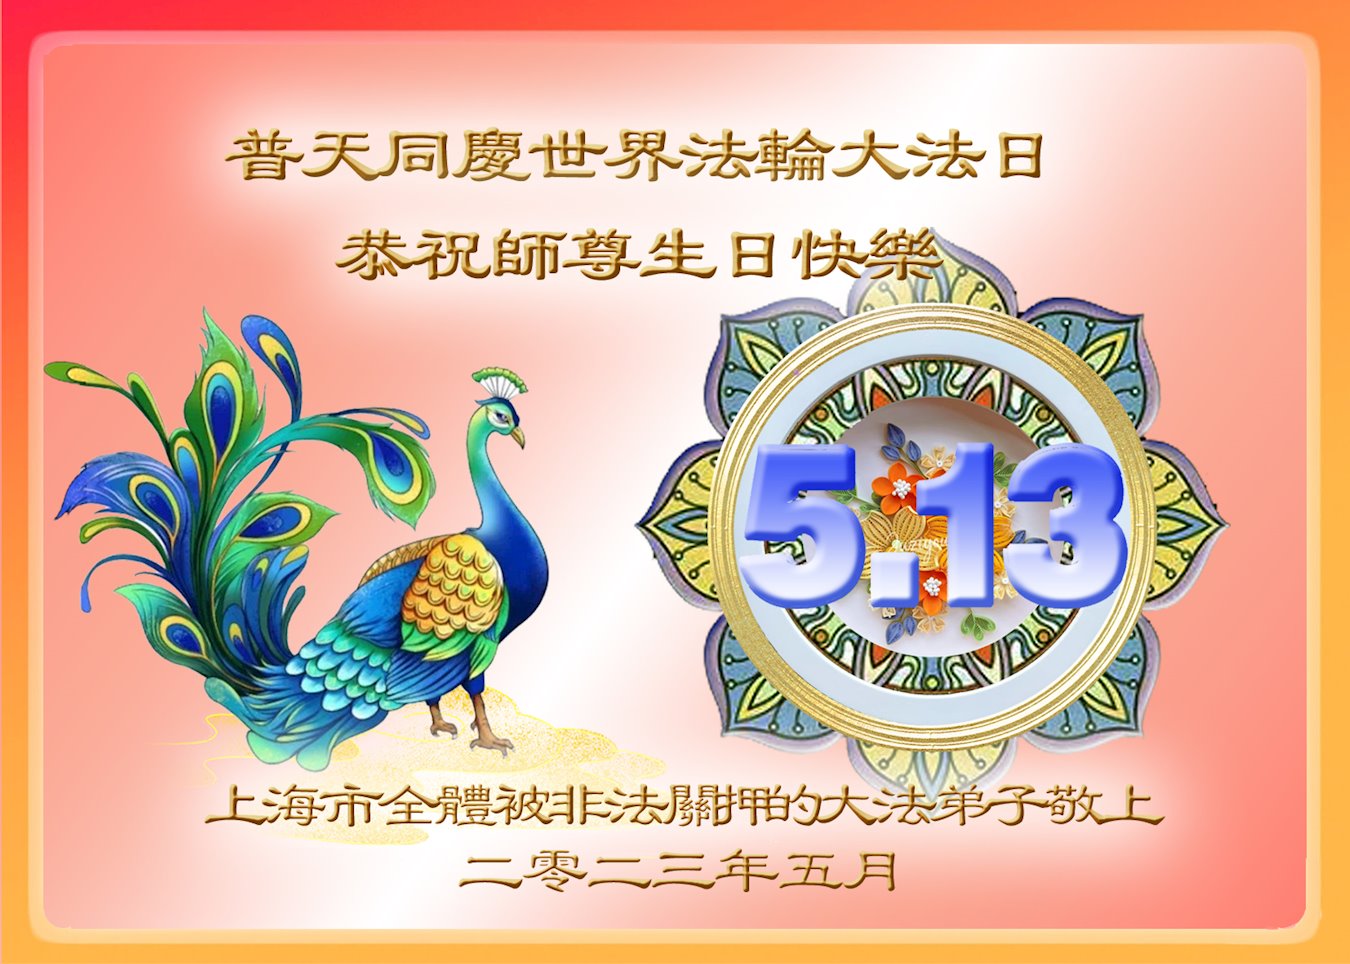 Image for article Les pratiquants de Falun Dafa illégalement incarcérés souhaitent respectueusement un joyeux anniversaire à Maître Li Hongzhi